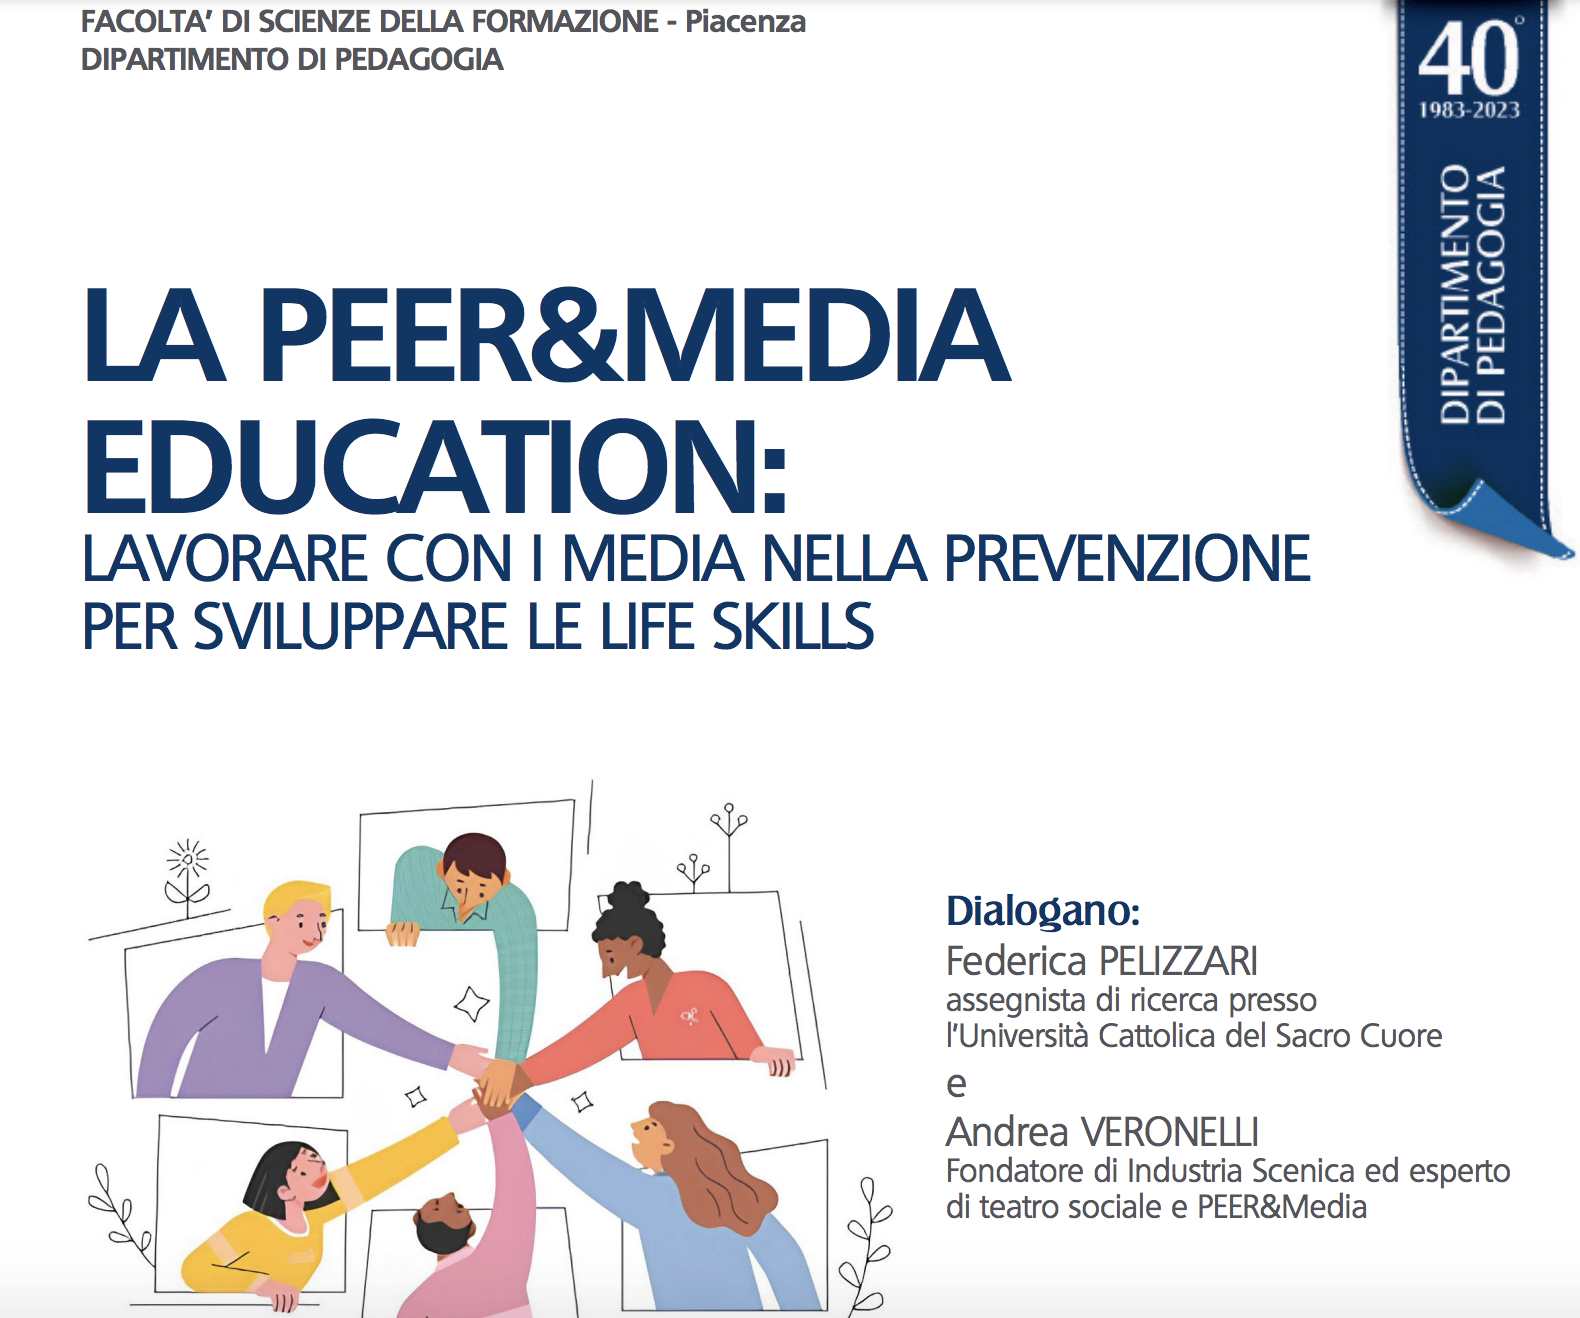 Peer & Media Education: Promuovere la consapevolezza attraverso l’informazione e la condivisione